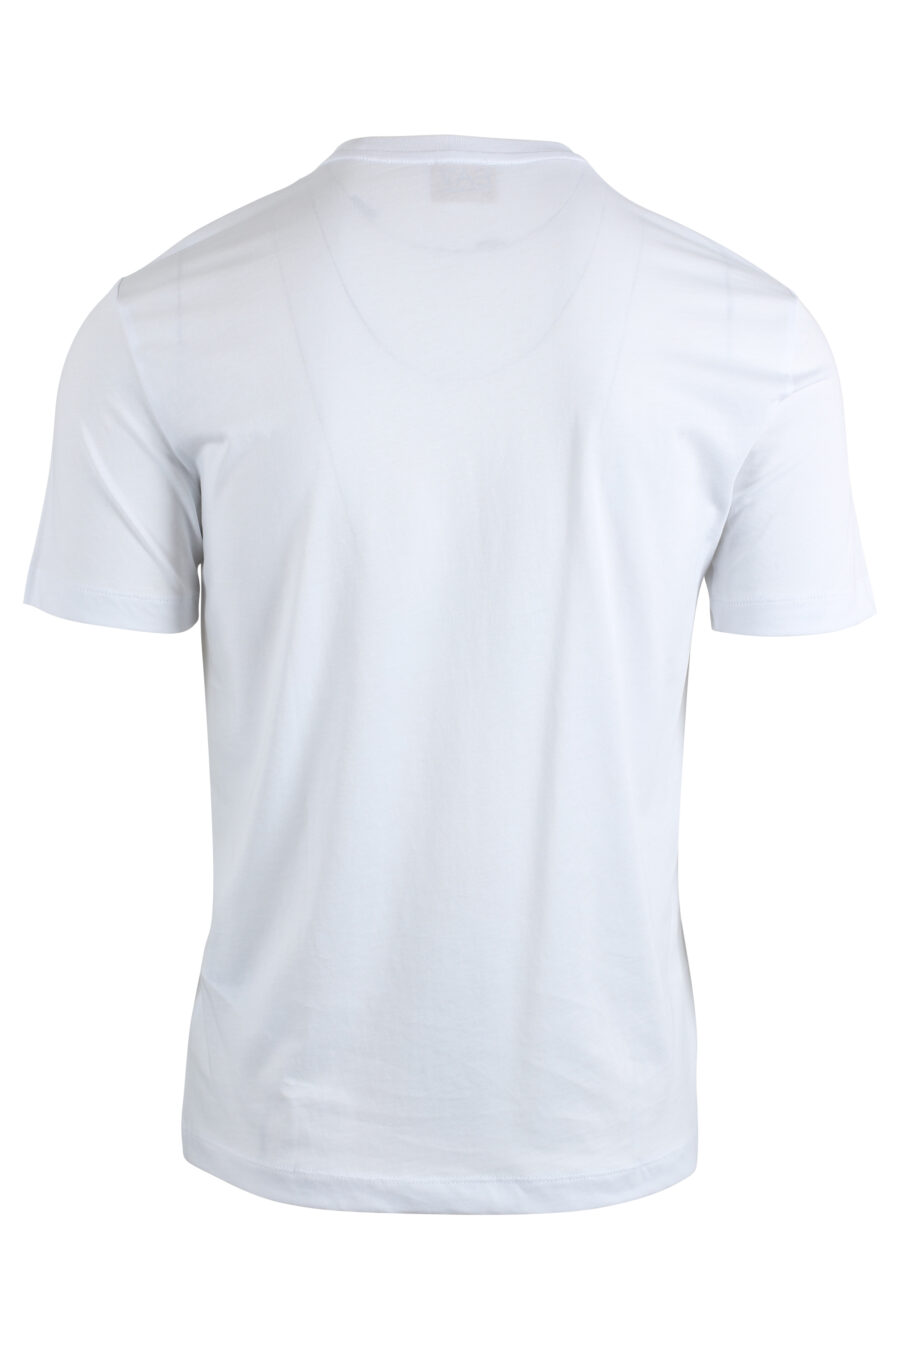 Camiseta blanca con maxilogo dorado y puntos - IMG 4785